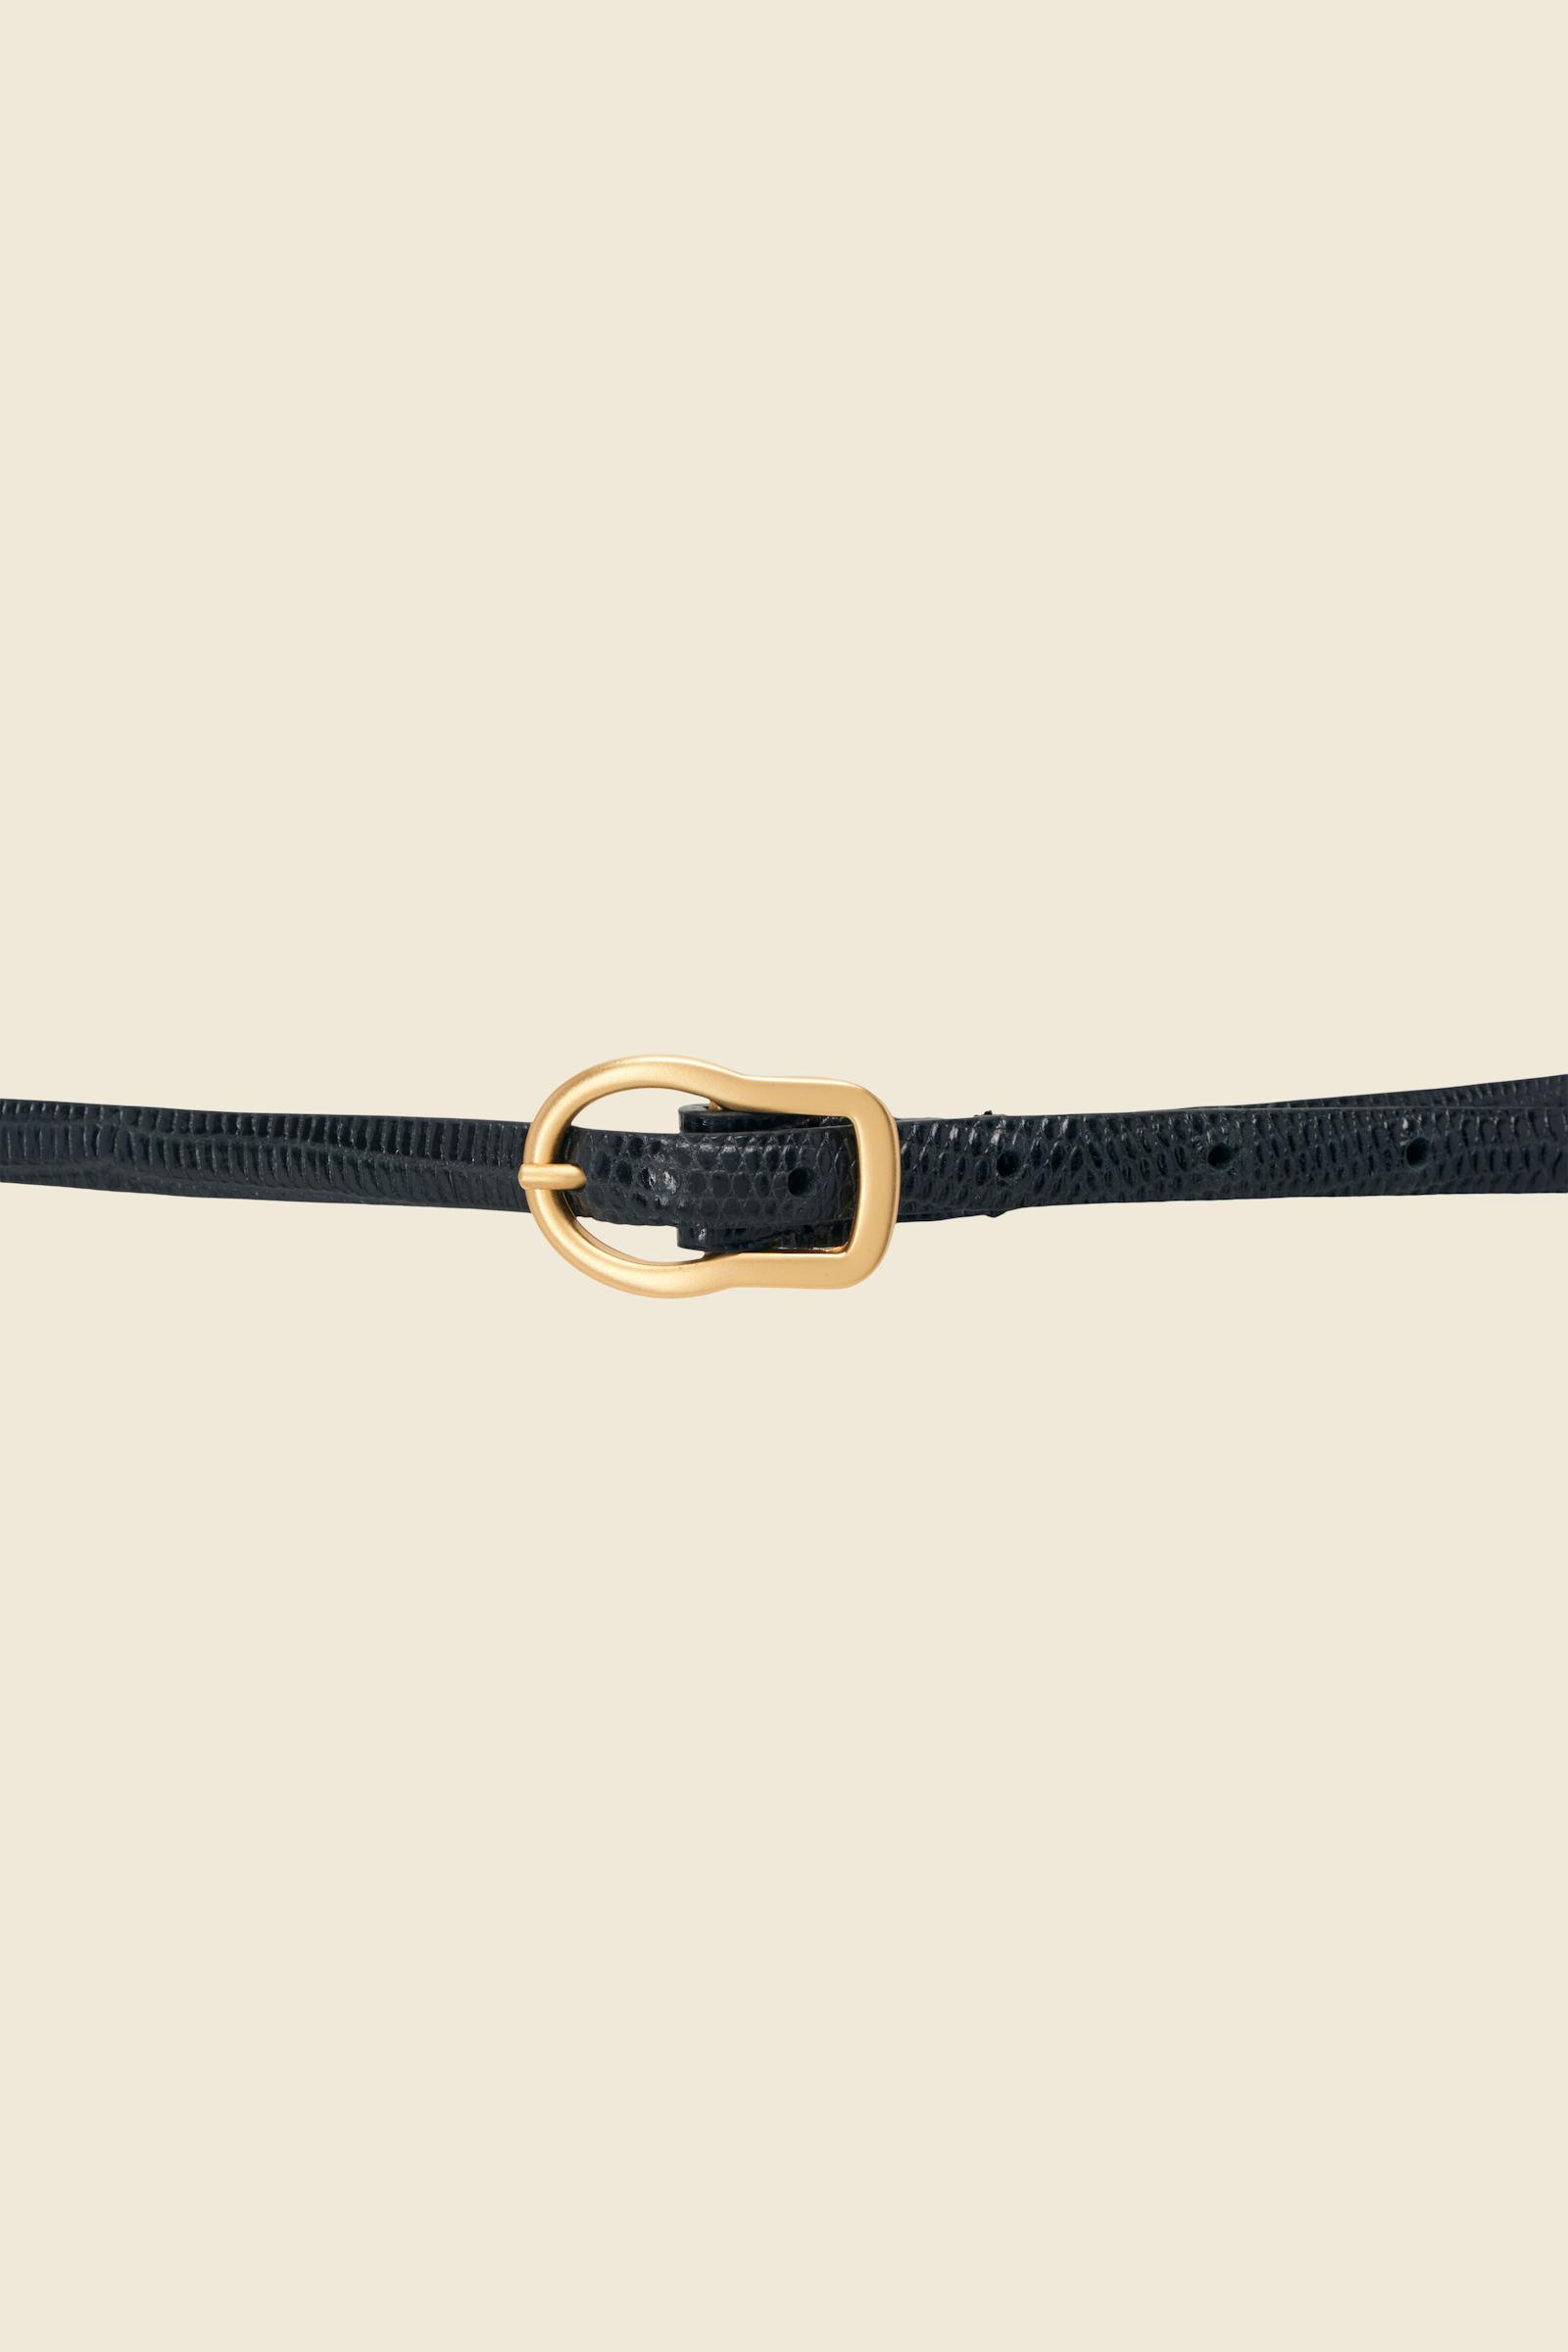 TEXTURED LUXE skinny belt